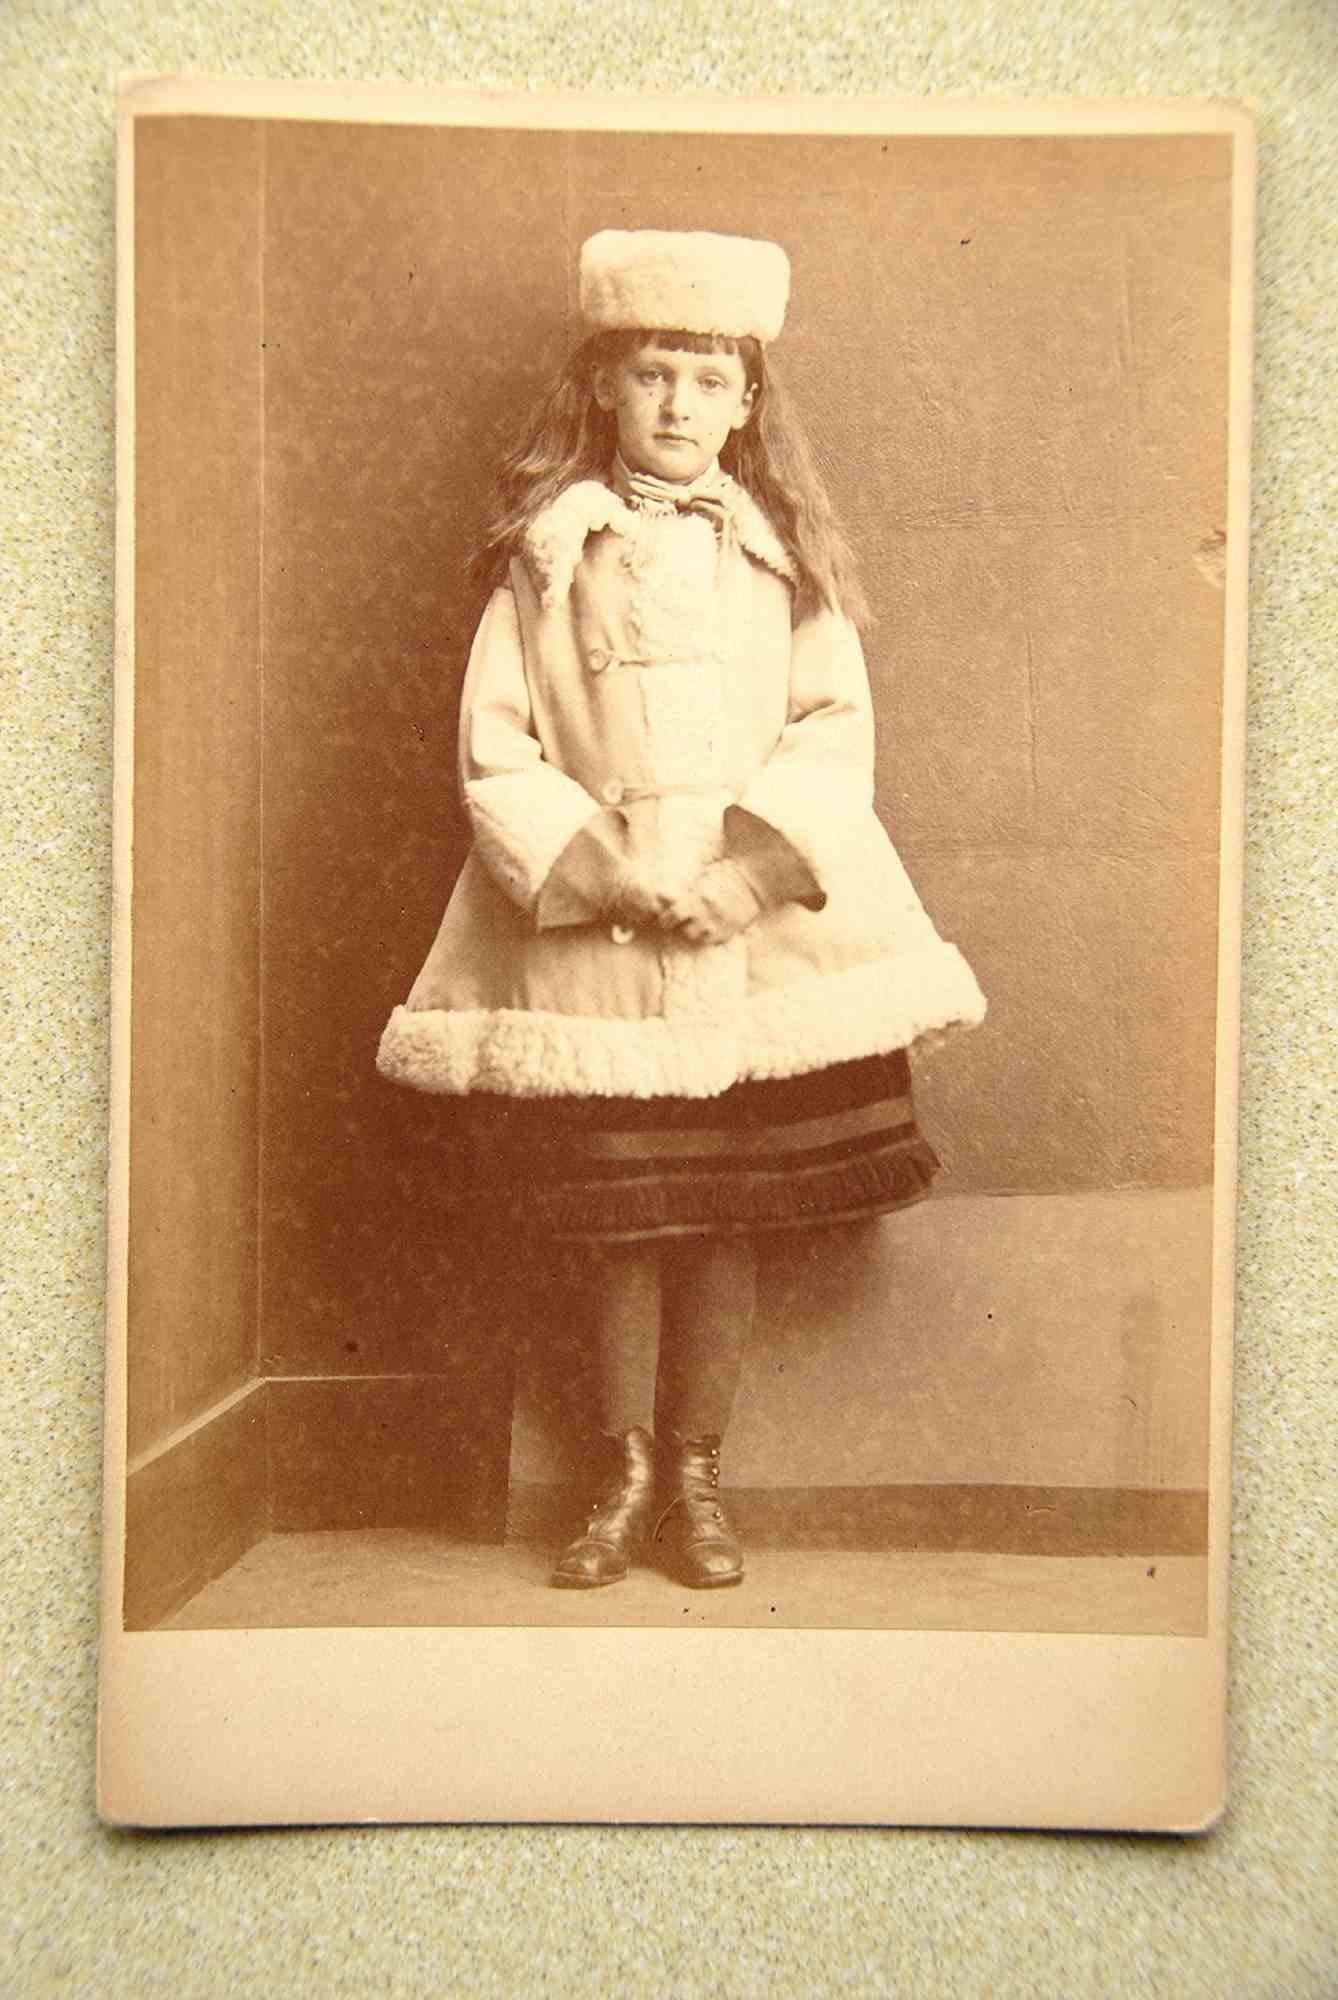 Xie Kitchin als Dane ist ein originales Vintage-Foto aus dem Jahr 1873 von Lewis Carroll (Daresbury, 27. Januar 1832 - Guildford, 14. Januar 1898).

Original-Albuminabzug auf Postkarte; Maße: 14 x 10 cm. 

Nr. 2132 "The Dane manuscript" wurde vom